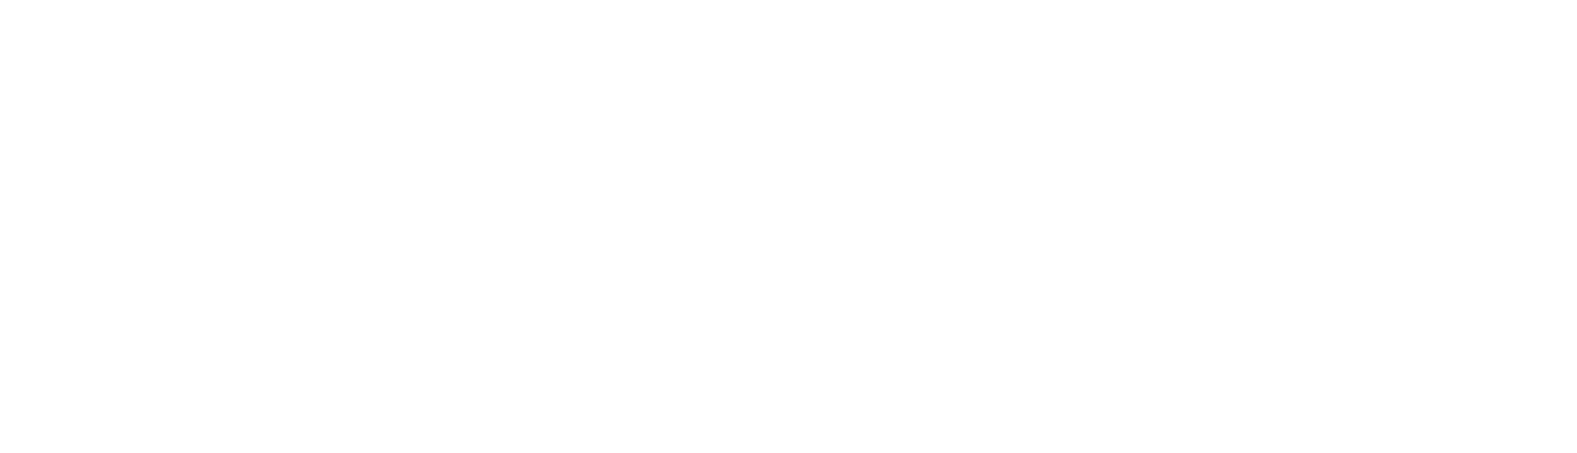 Allego Logo groß für dunkle Hintergründe (transparentes PNG)